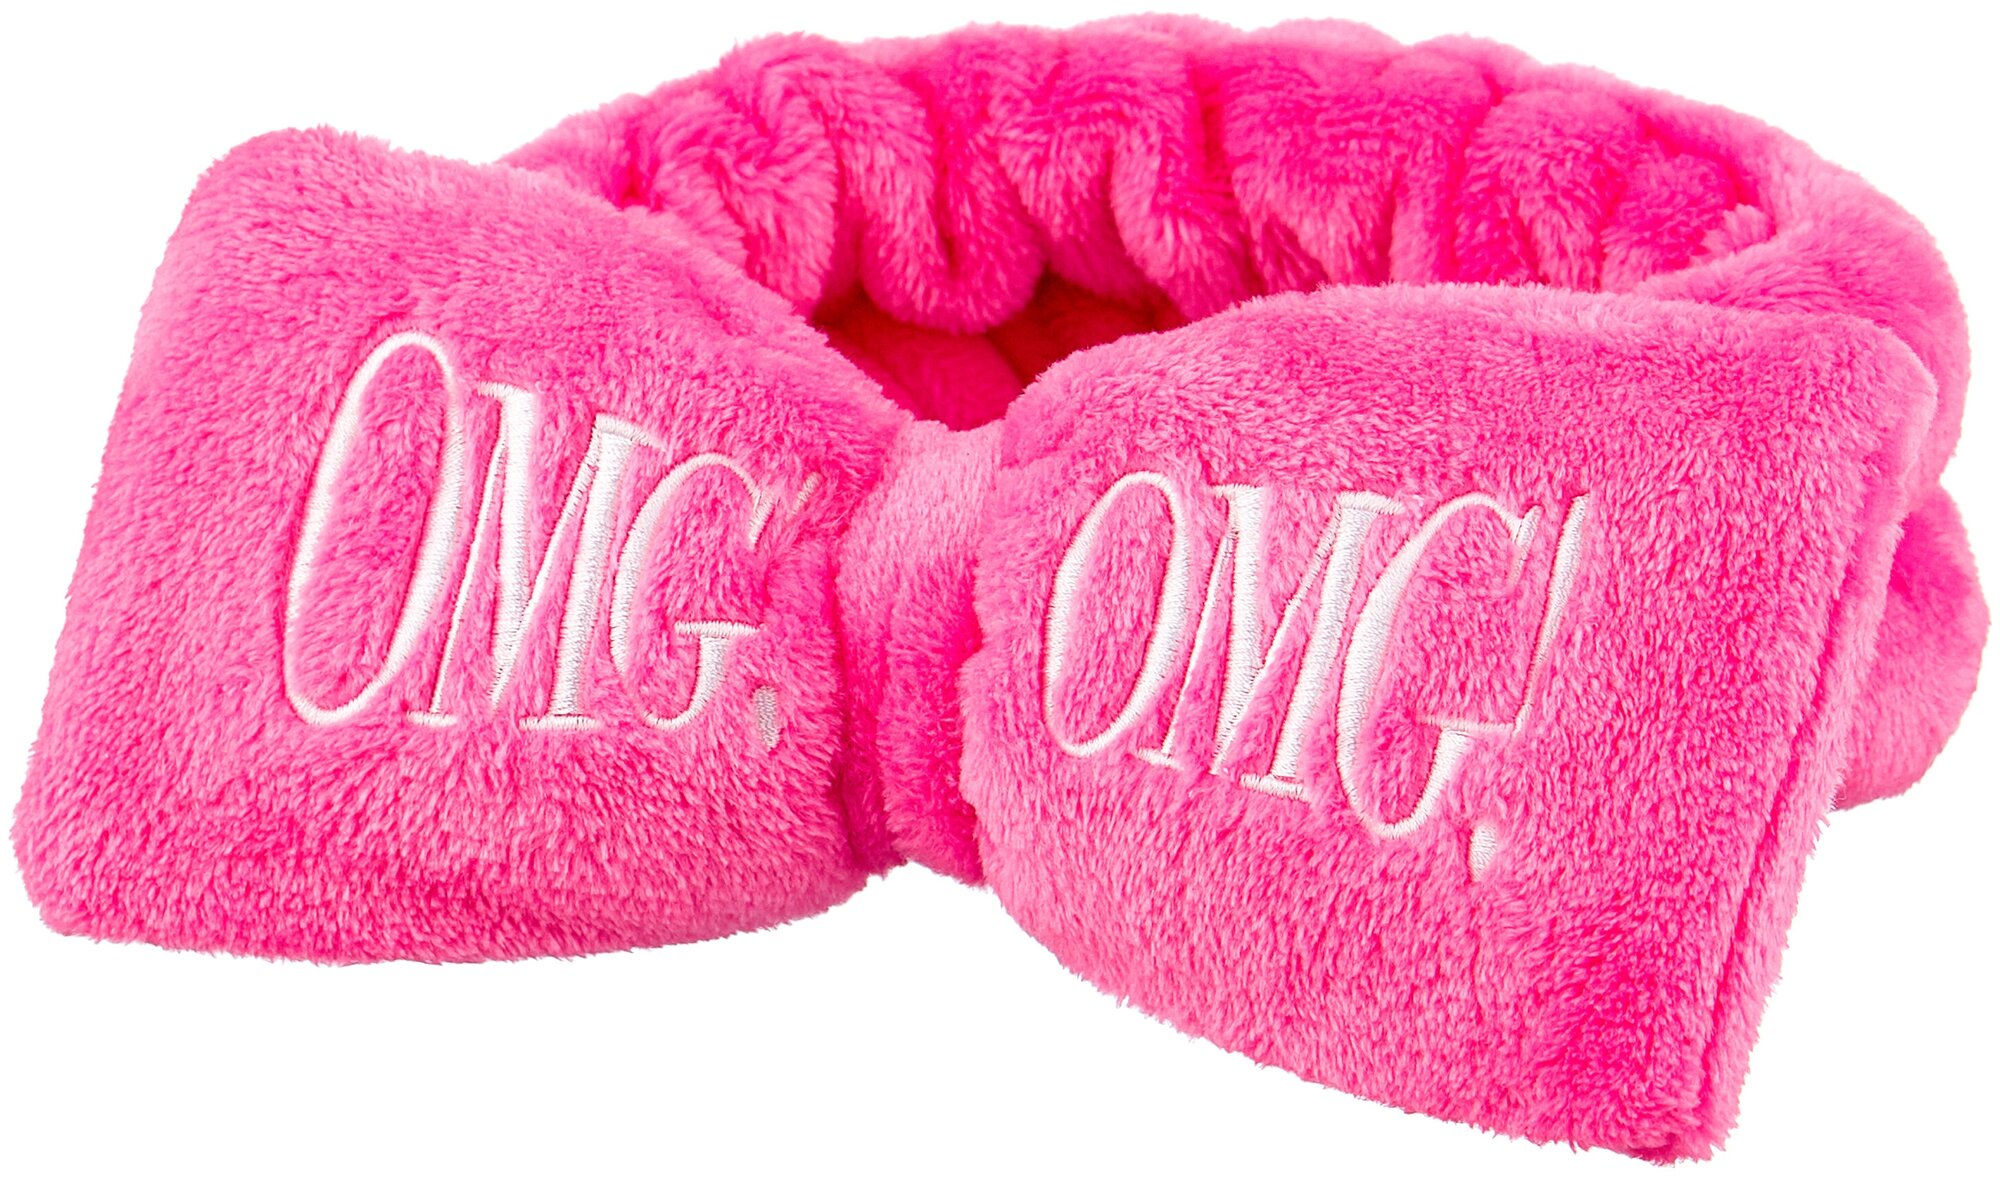 Double Dare OMG! бант-повязка для фиксации волос во время косметических процедур, ярко-розовый